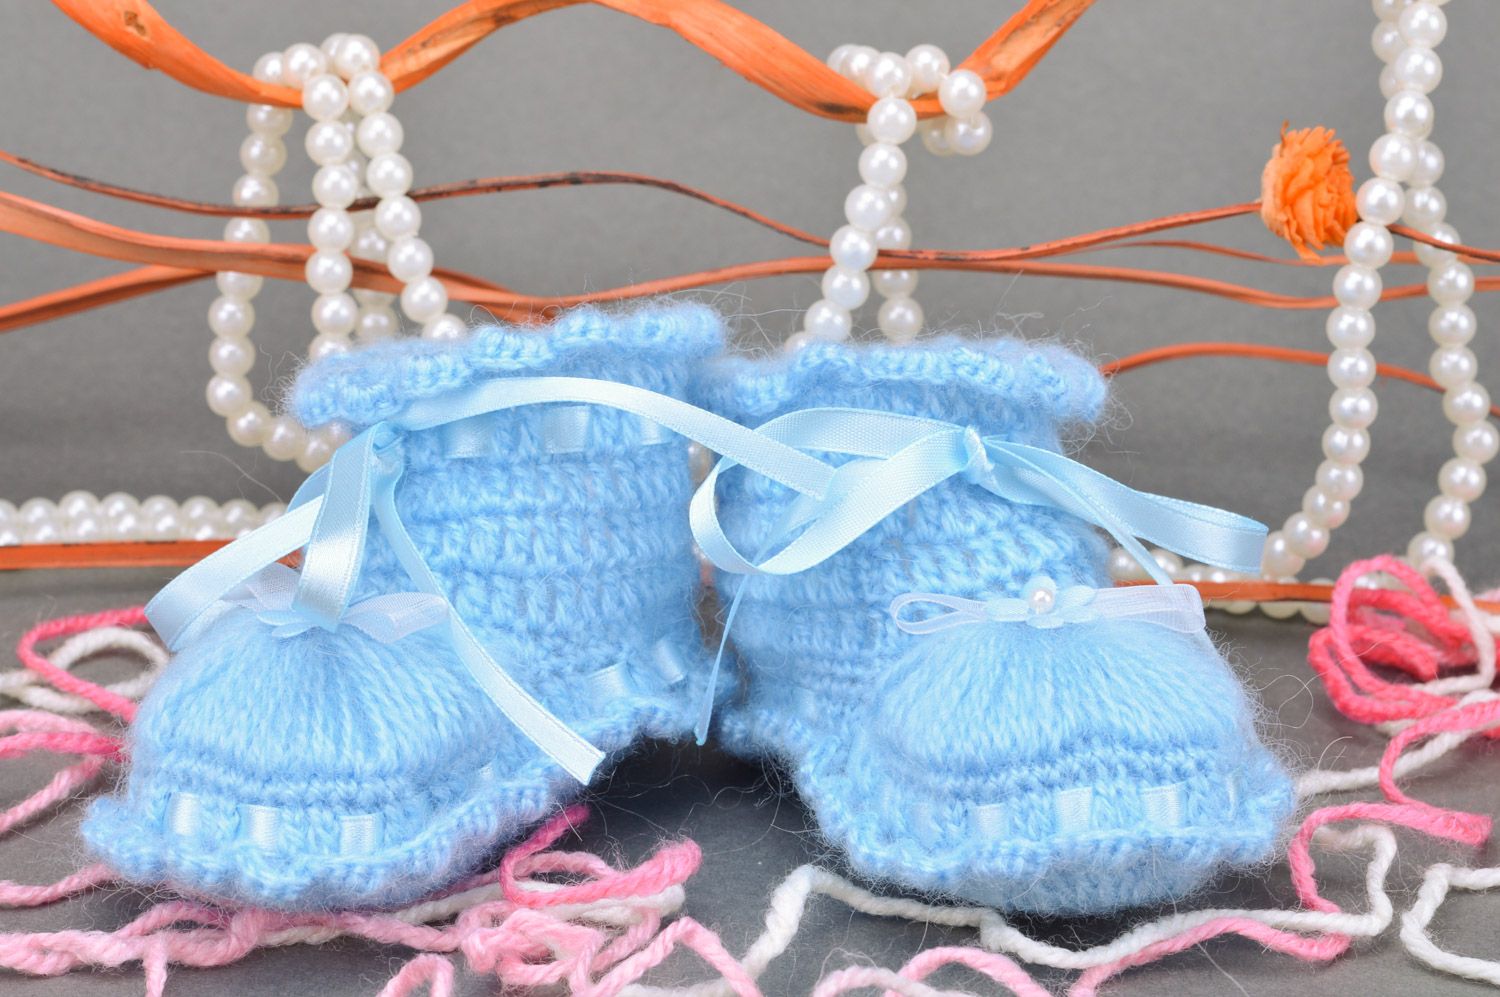 Chaussons de bébé bleu clair tricotés en acrylique faits main pour fille photo 1